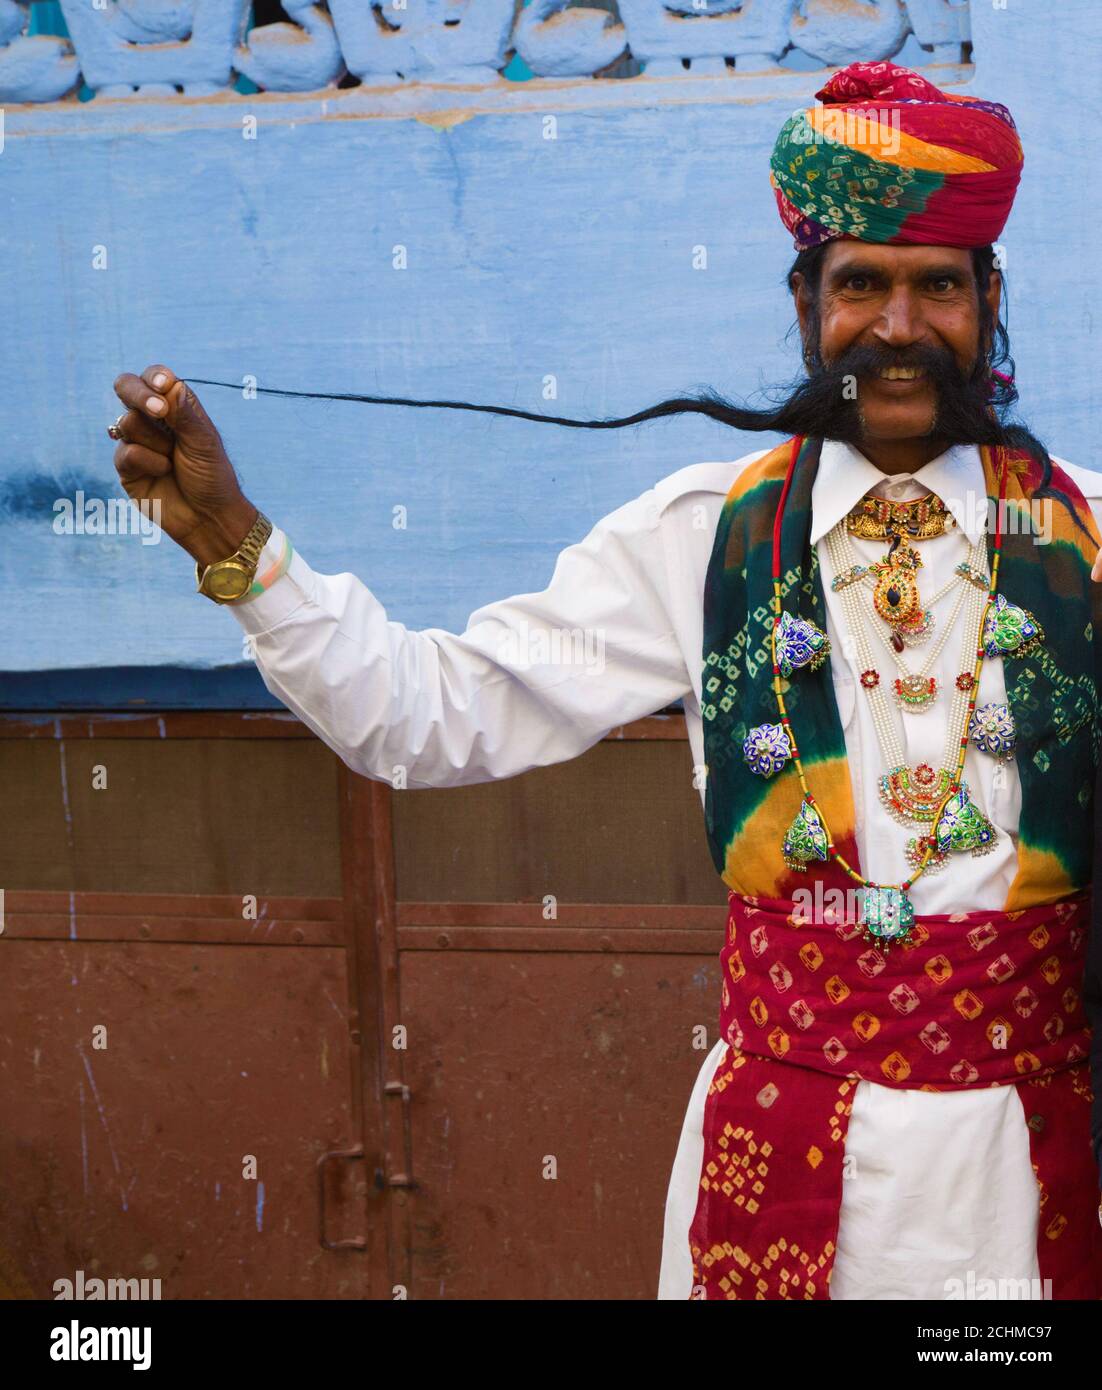 Jaipur, Indien: Inder und seine sehr langen Schnurrbärte. Stockfoto